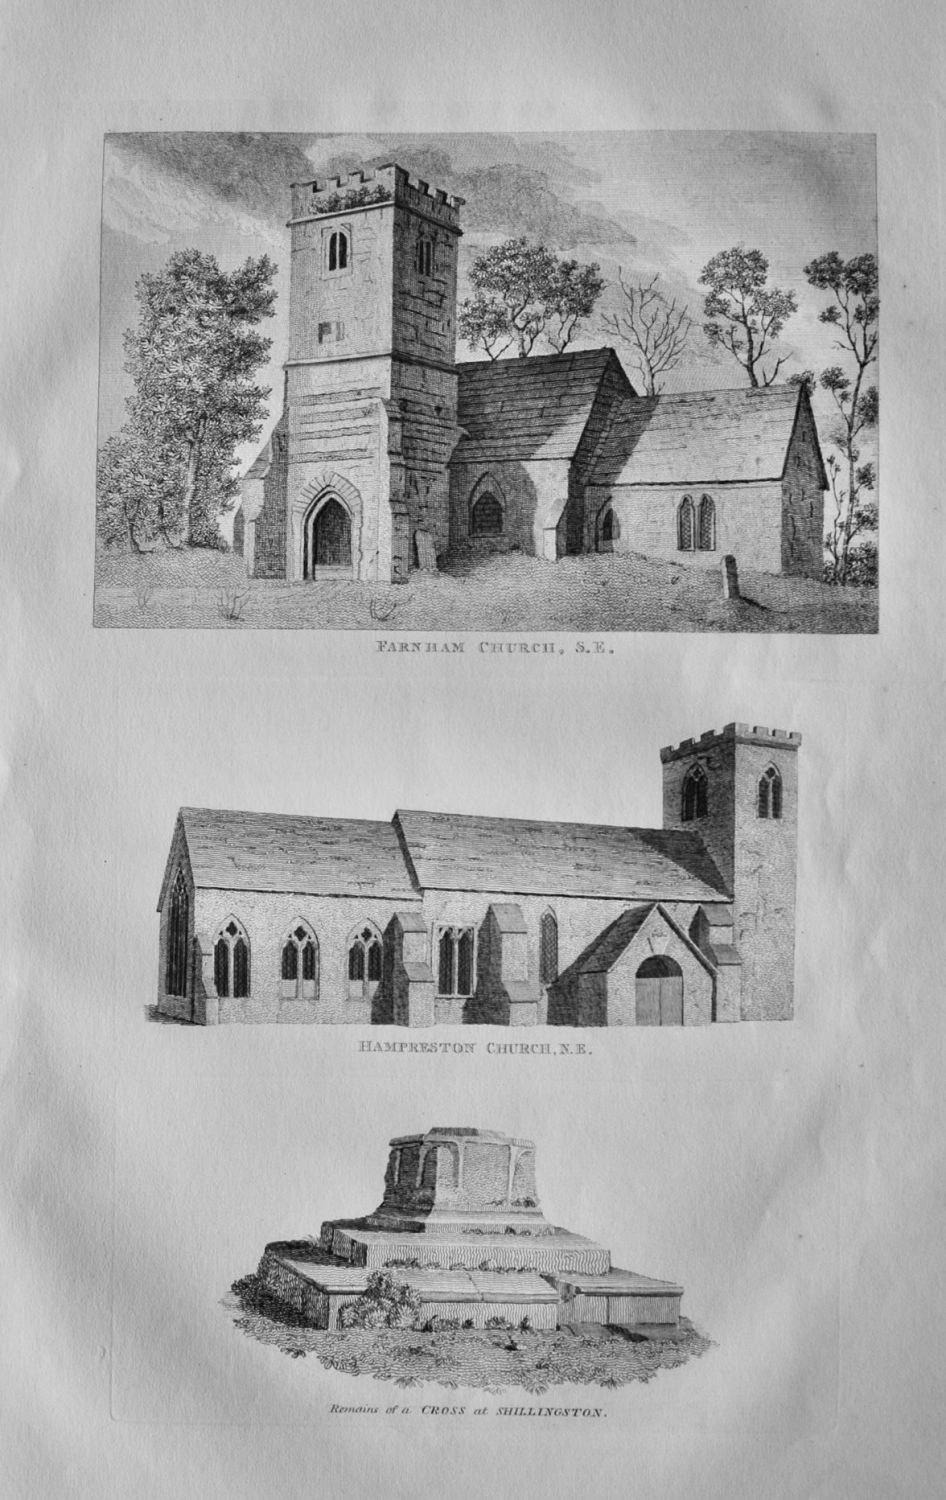 Hampreston Church, N.E.   &   Farnham Church, S.E.  &   Remains of a Cross 